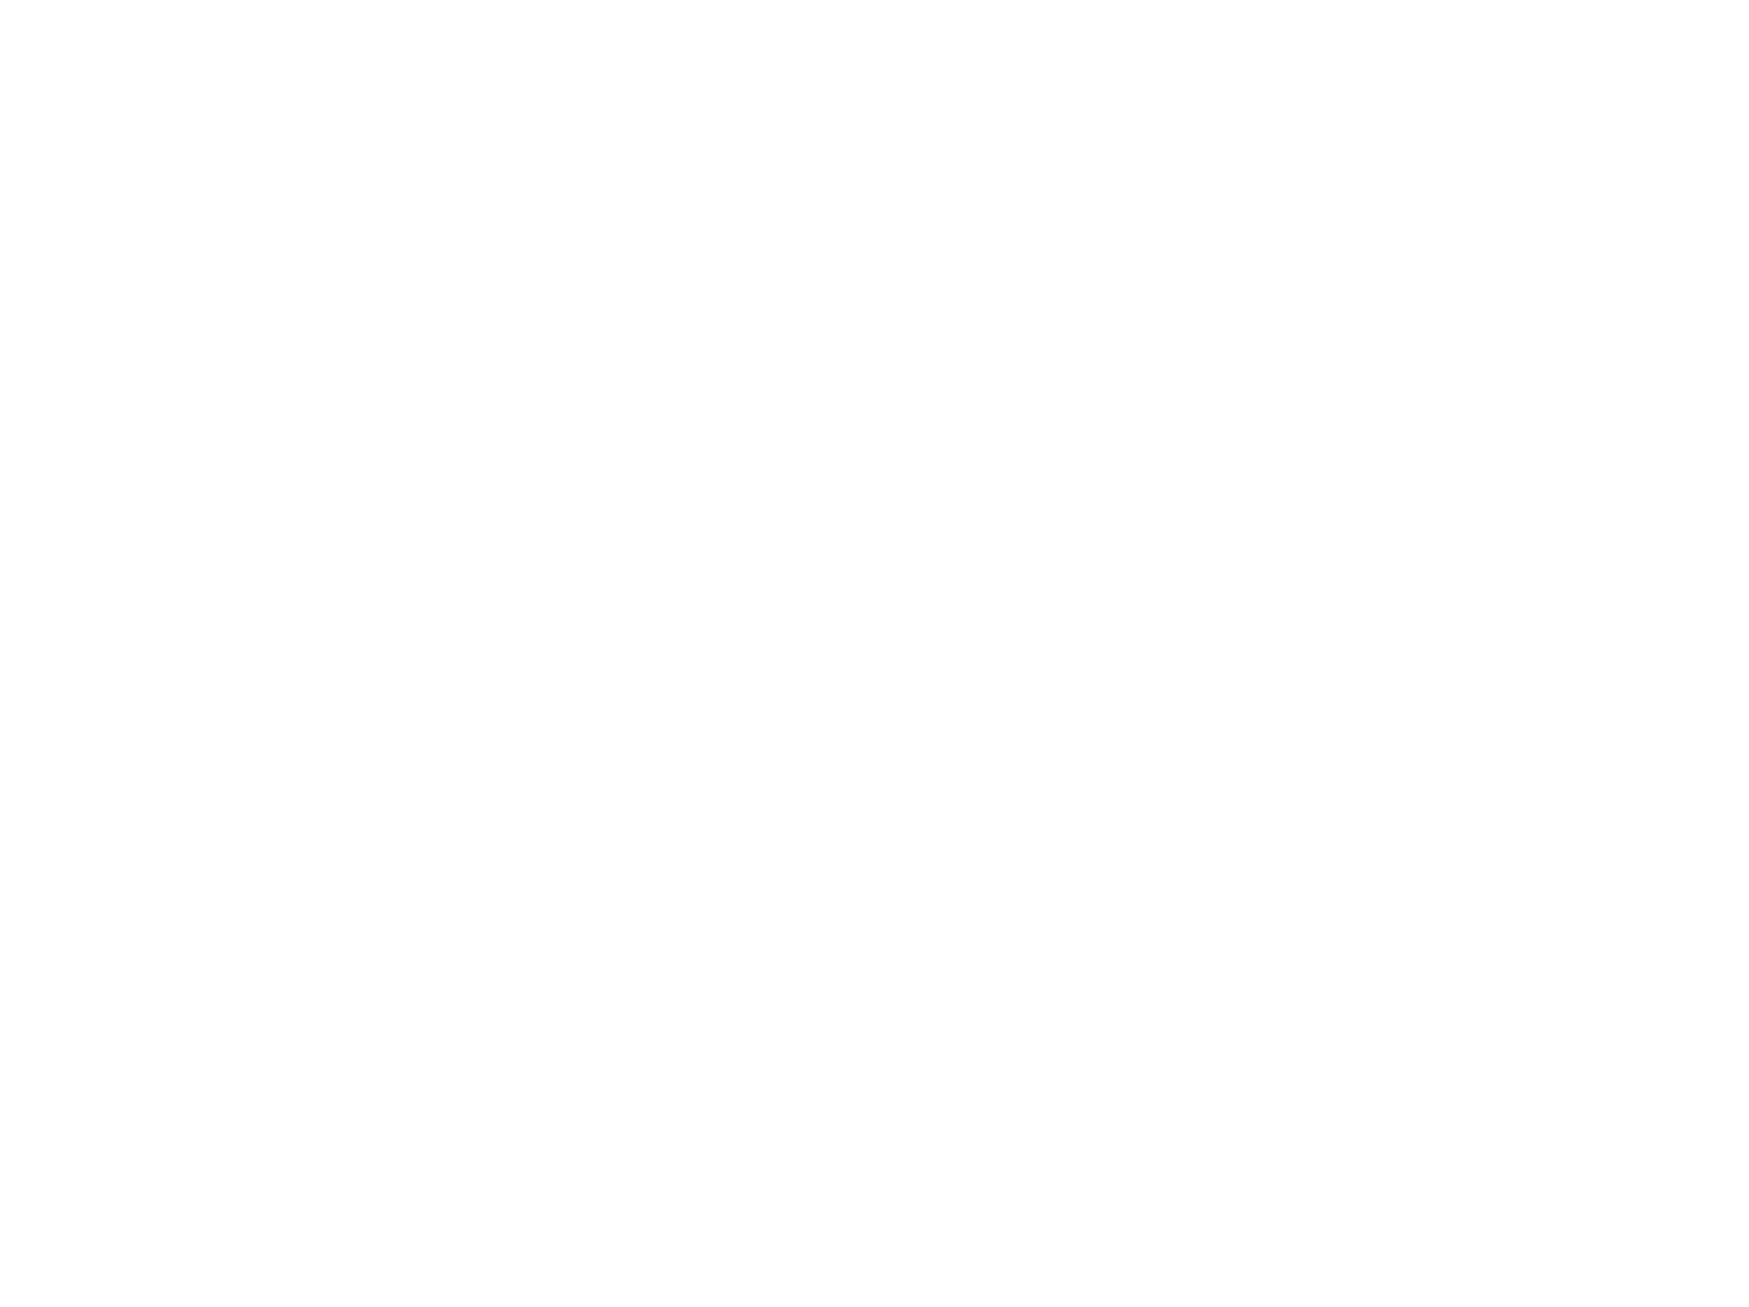 Michelangelo's Sistine Chapel: Melbourne Exhibit